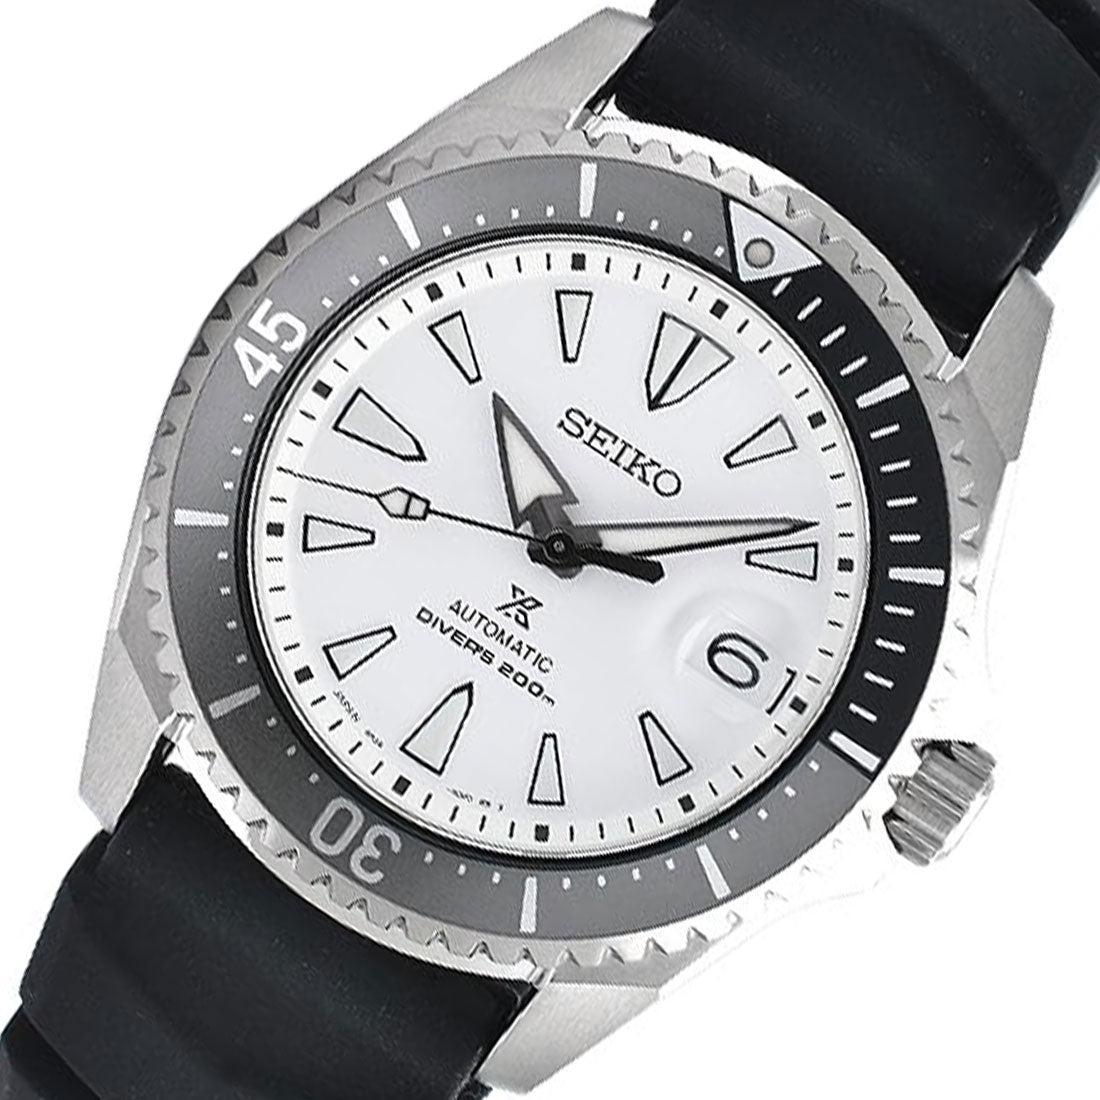 Seiko JDM Shogun SBDC131 Prospex Titanium Divers Watch -Seiko